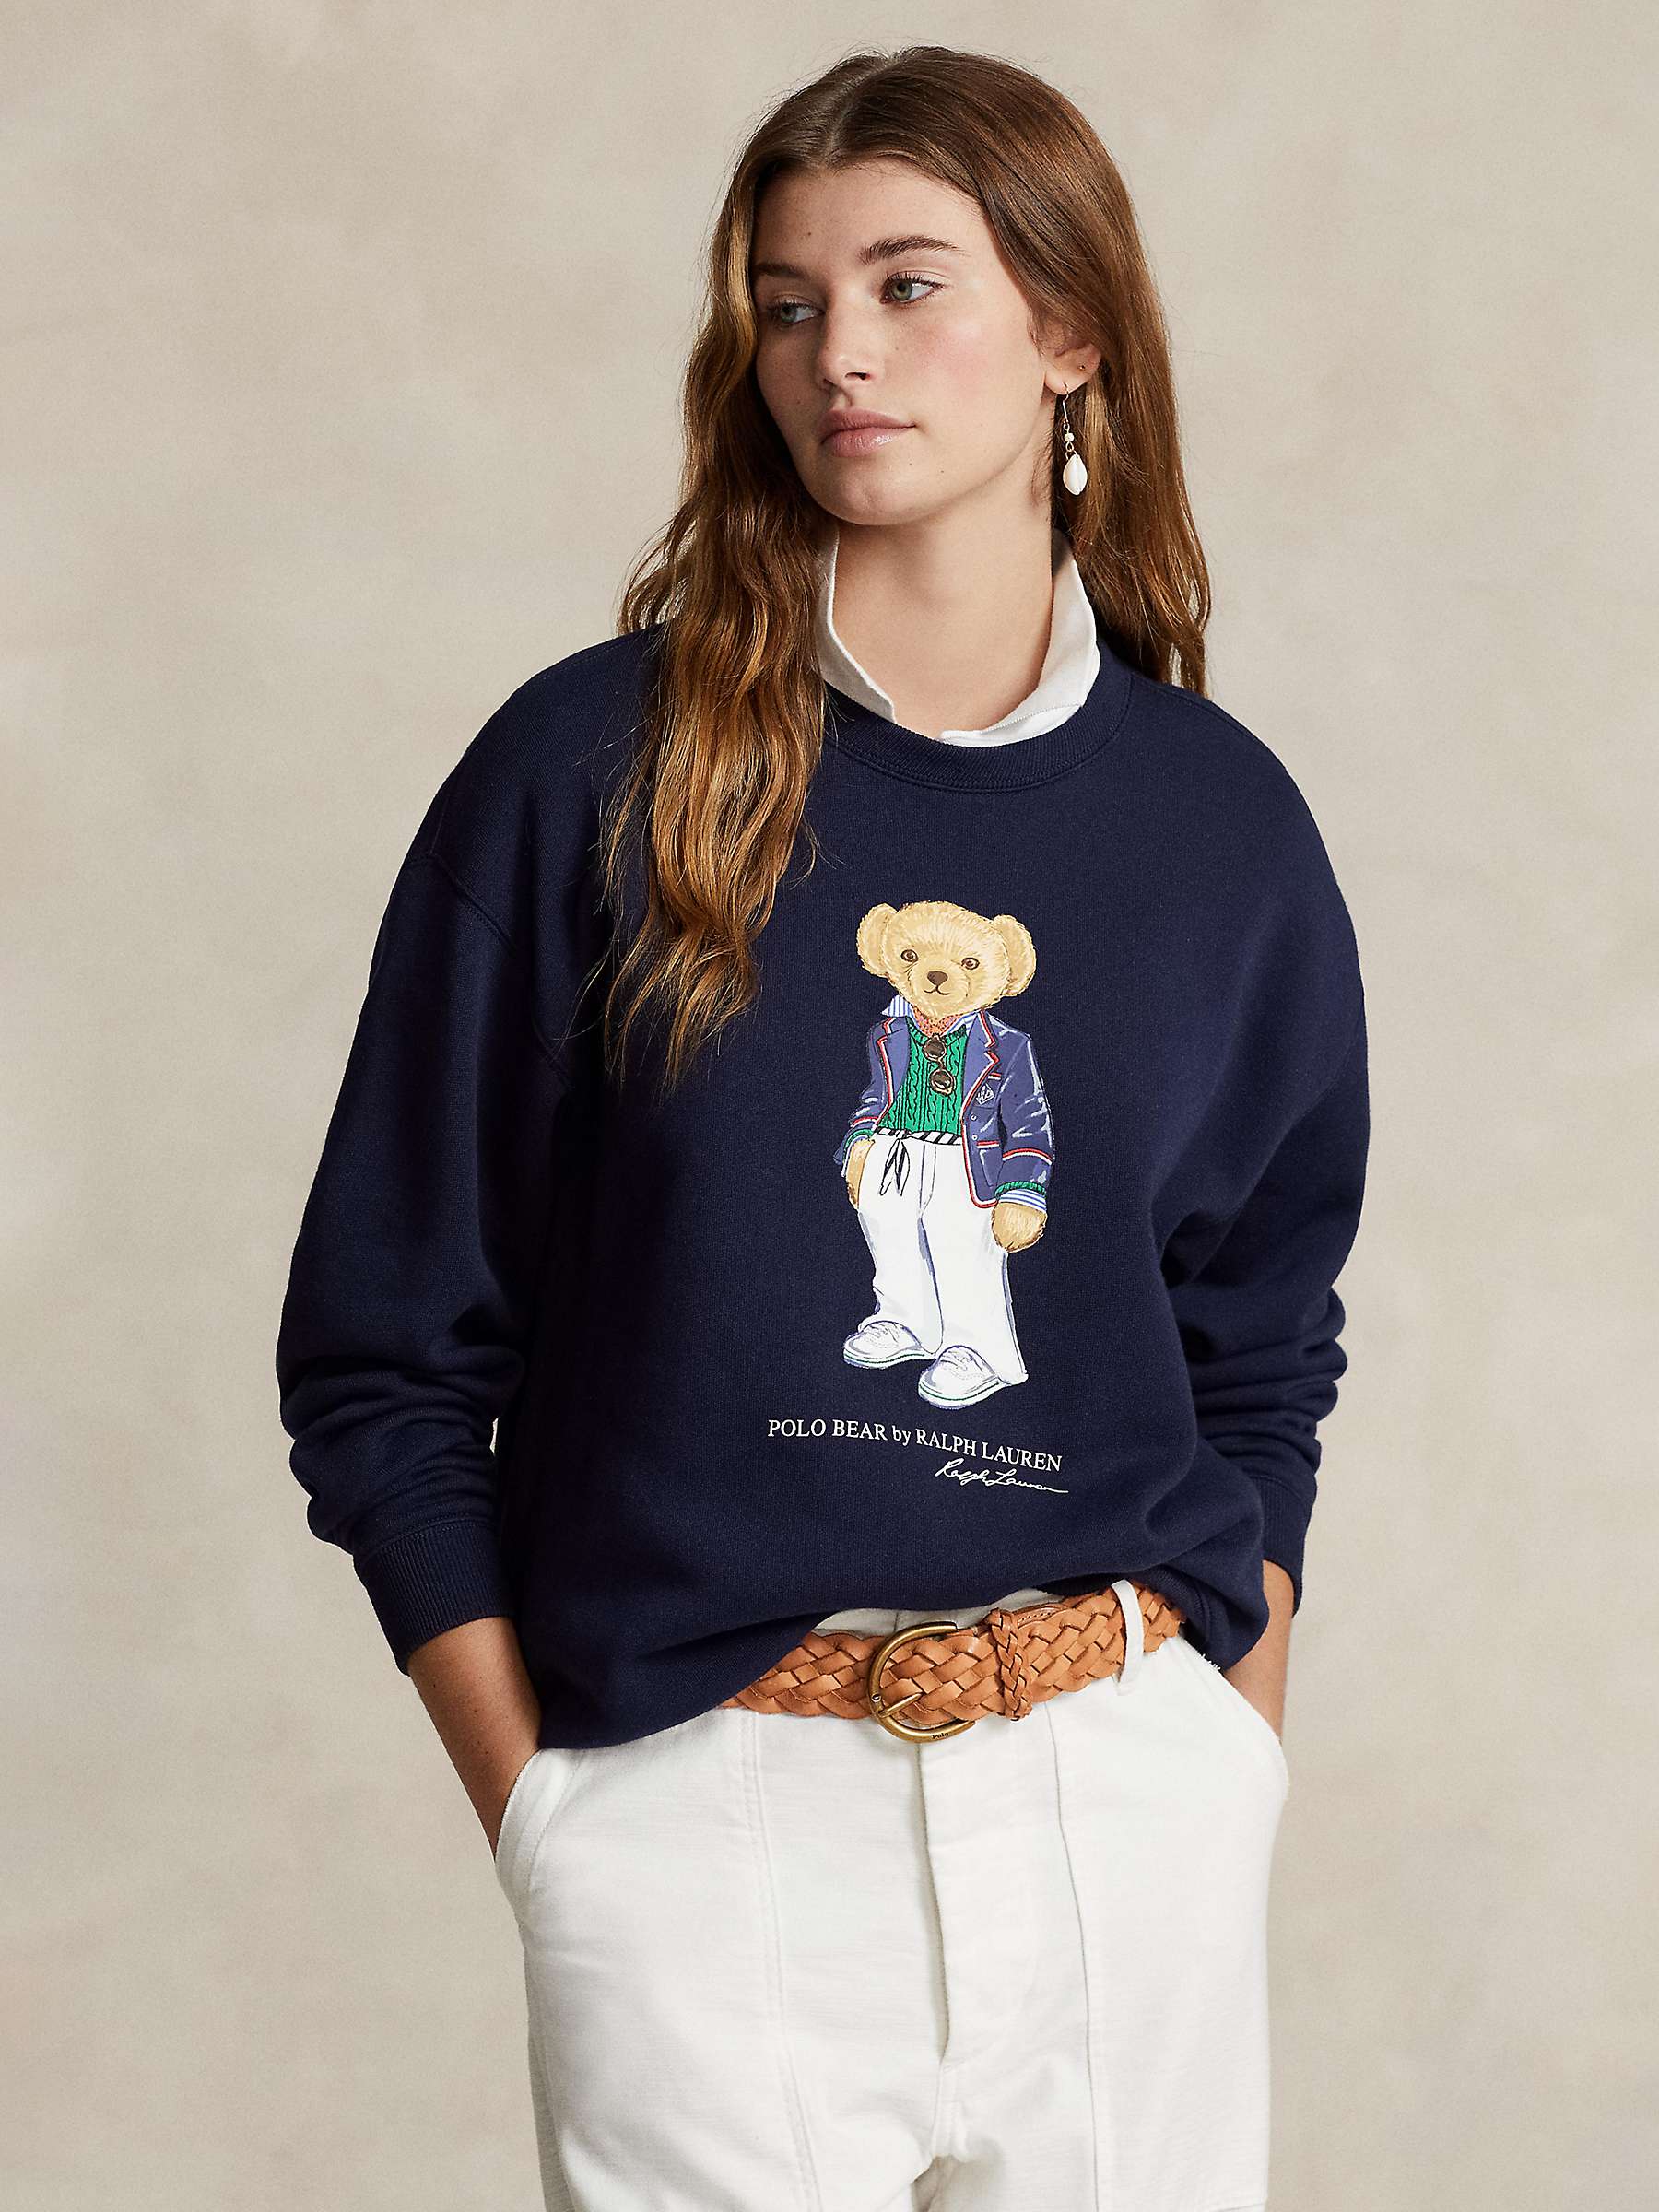 Buy Polo Ralph Lauren Bear Graphic Sweatshirt, Navy Online at johnlewis.com